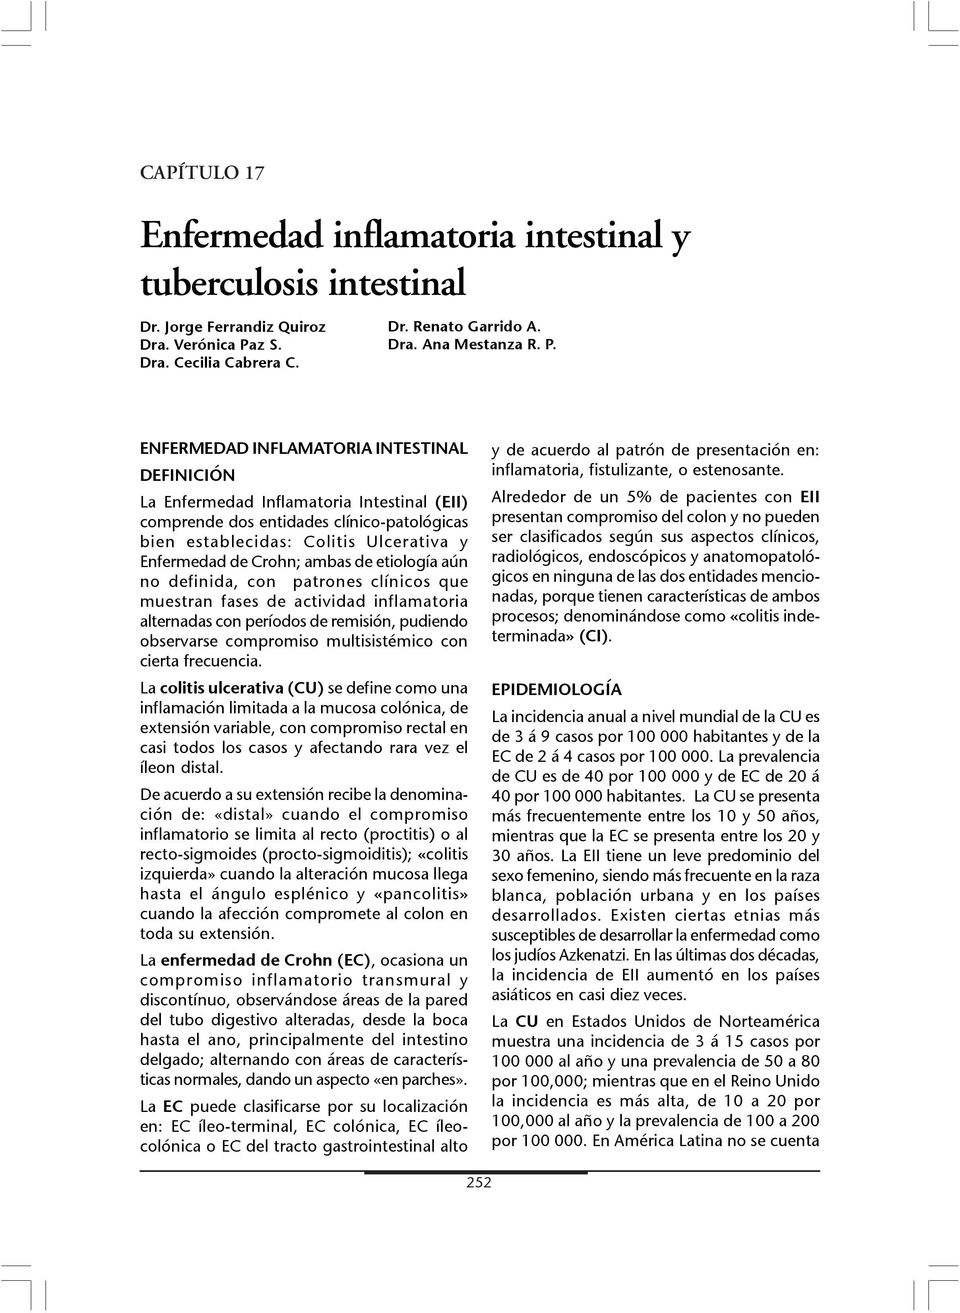 ENFERMEDAD INFLAMATORIA INTESTINAL DEFINICIÓN La Enfermedad Inflamatoria Intestinal (EII) comprende dos entidades clínico-patológicas bien establecidas: Colitis Ulcerativa y Enfermedad de Crohn;